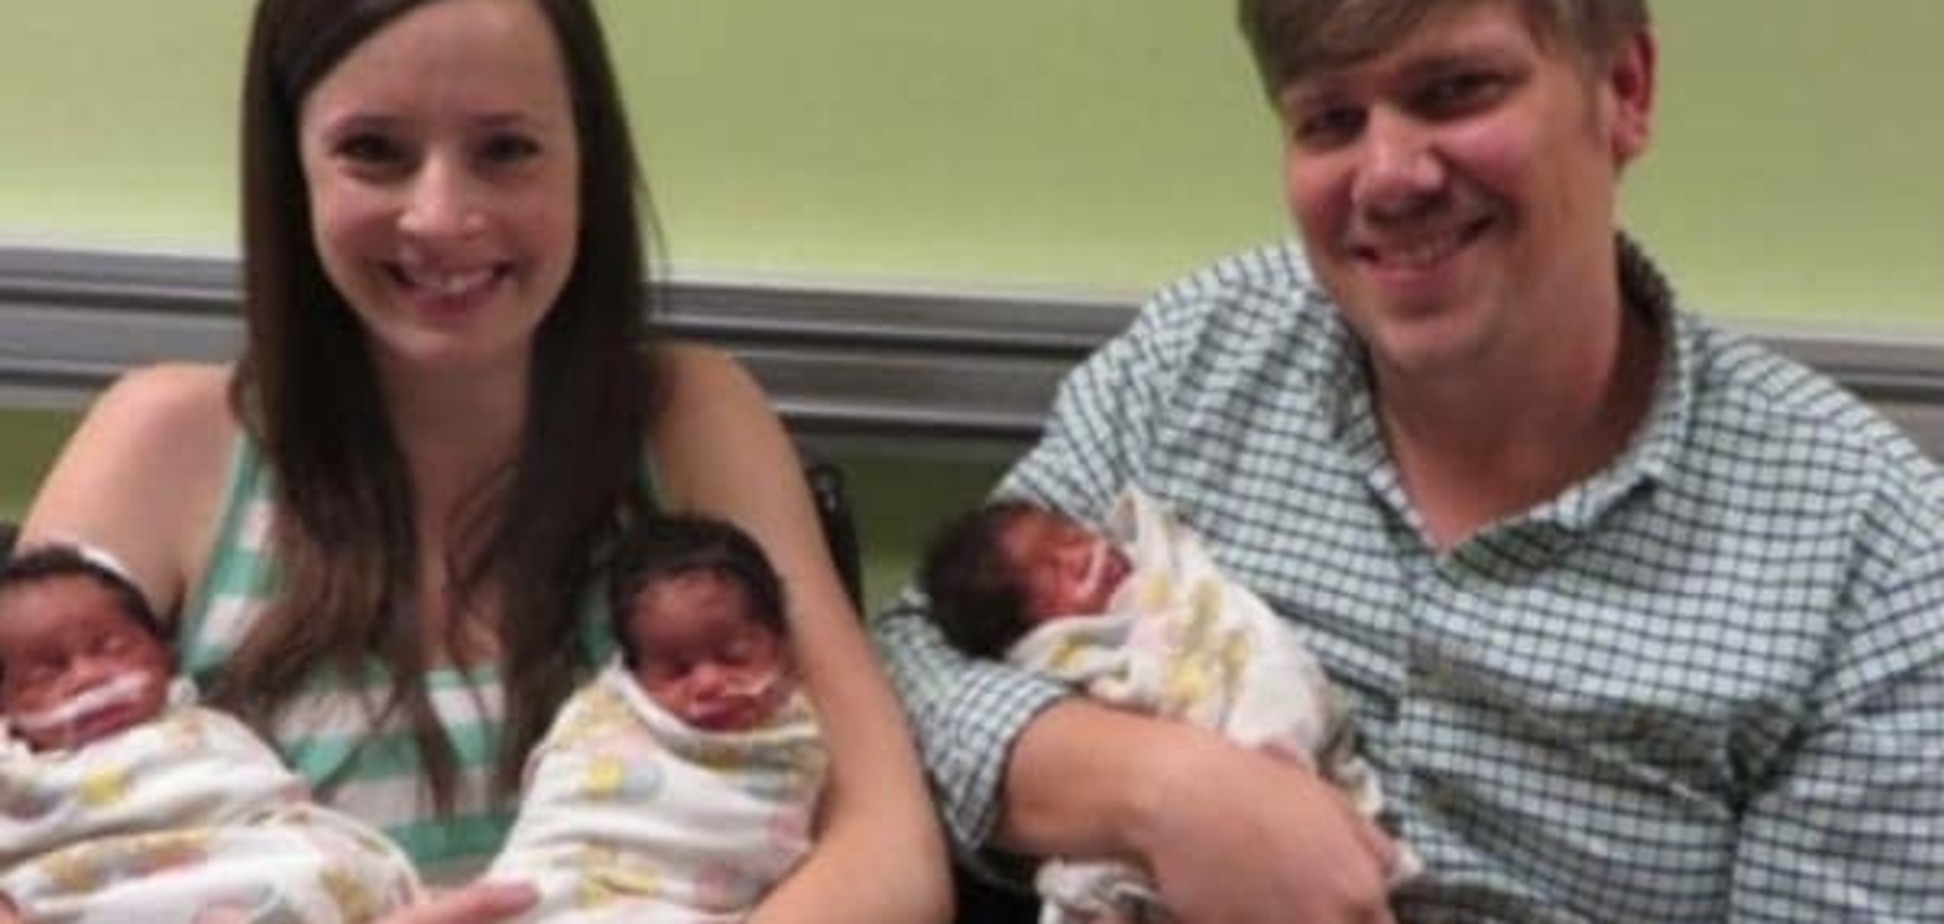 Как белая пара усыновила три эмбриона темнокожих малышей (фото)